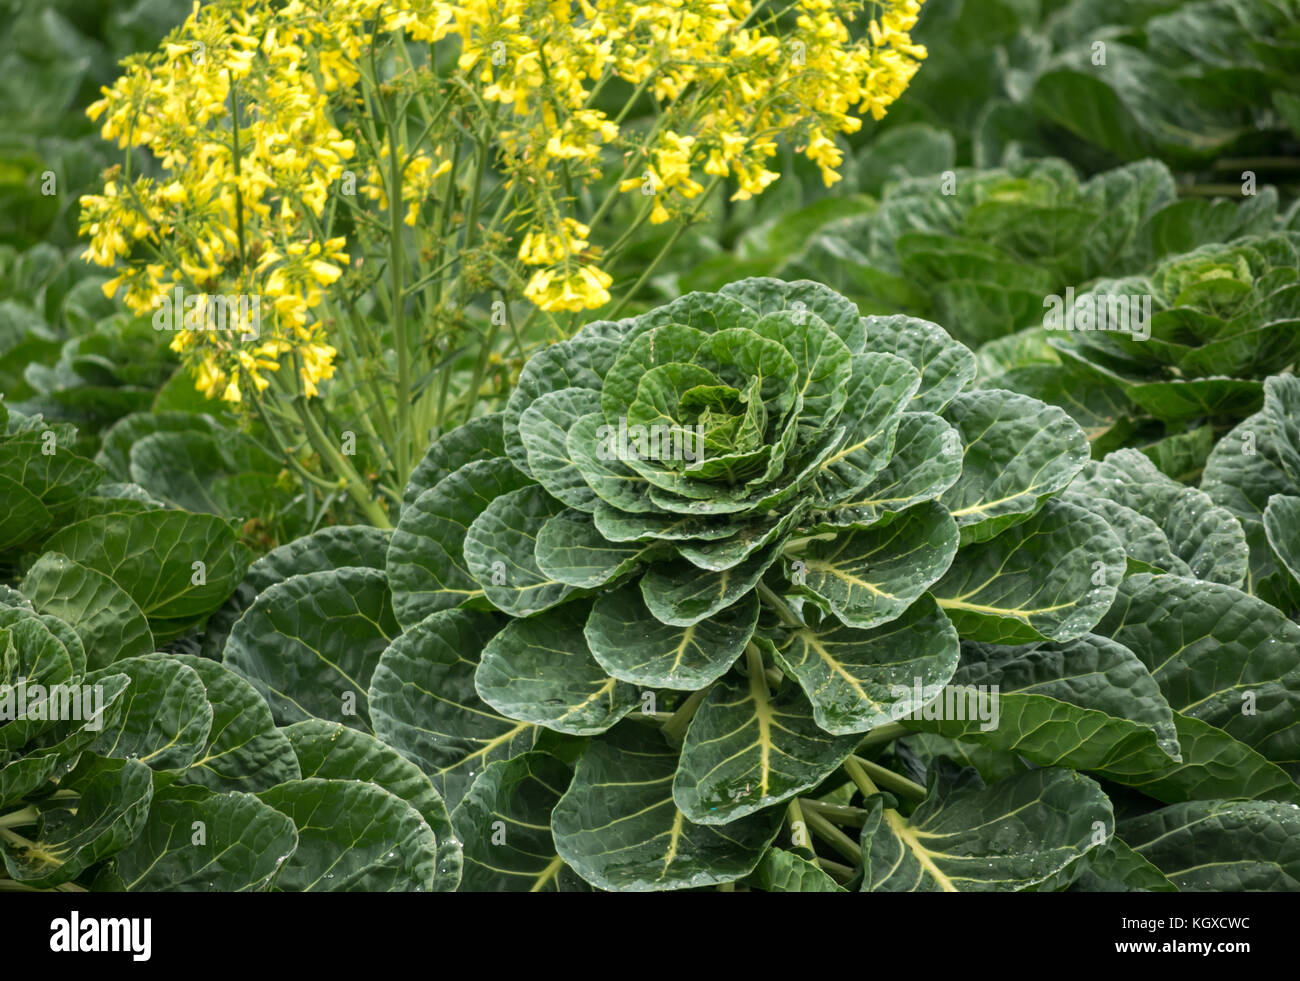 Nahaufnahme von Rosenkohl Pflanze, Brassica oleracea, wachsen im Getreidefeld mit gelb blühenden Unkraut, East Lothian, Schottland, Großbritannien Stockfoto